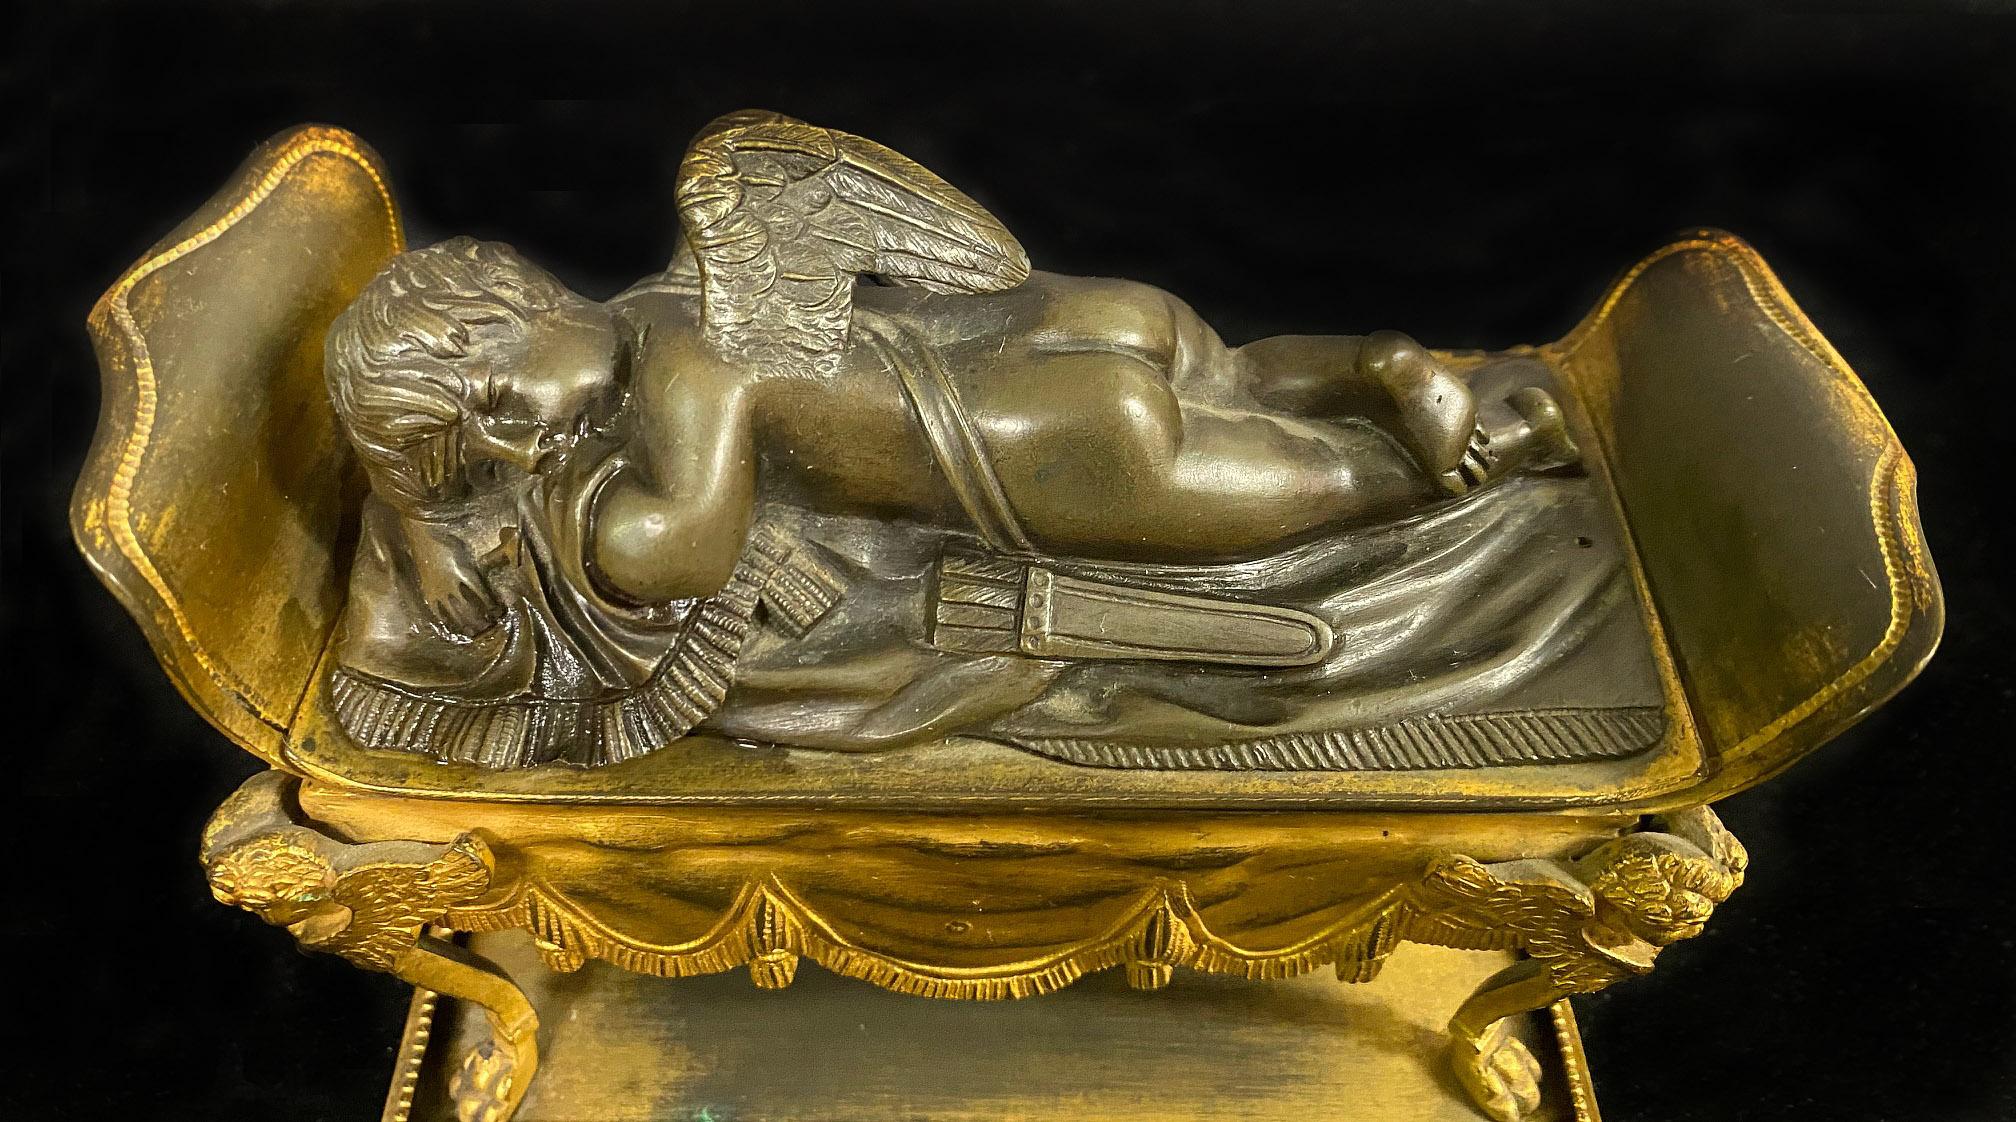 Ein schönes Tintenfass aus vergoldeter und patinierter Bronze aus dem späten 19

Darstellung eines schlafenden Cherubs aus Bronze, der auf einem vergoldeten Bronzesofa liegt, das sich zu zwei Tintenfässern hin öffnet.